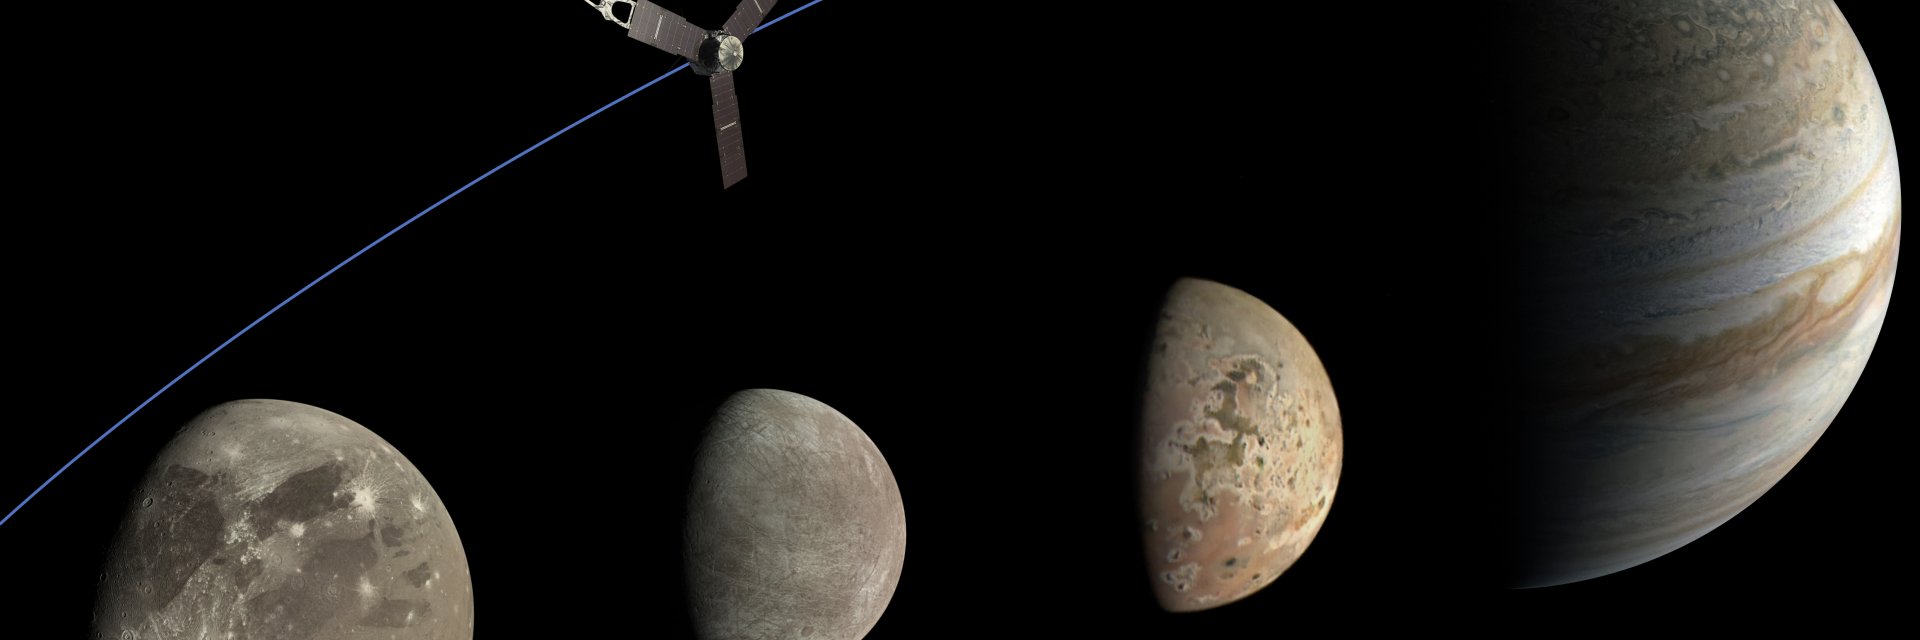 Сондата „Джуно“ направи най-близкото си приближаване до Йо – огнената луна на Юпитер